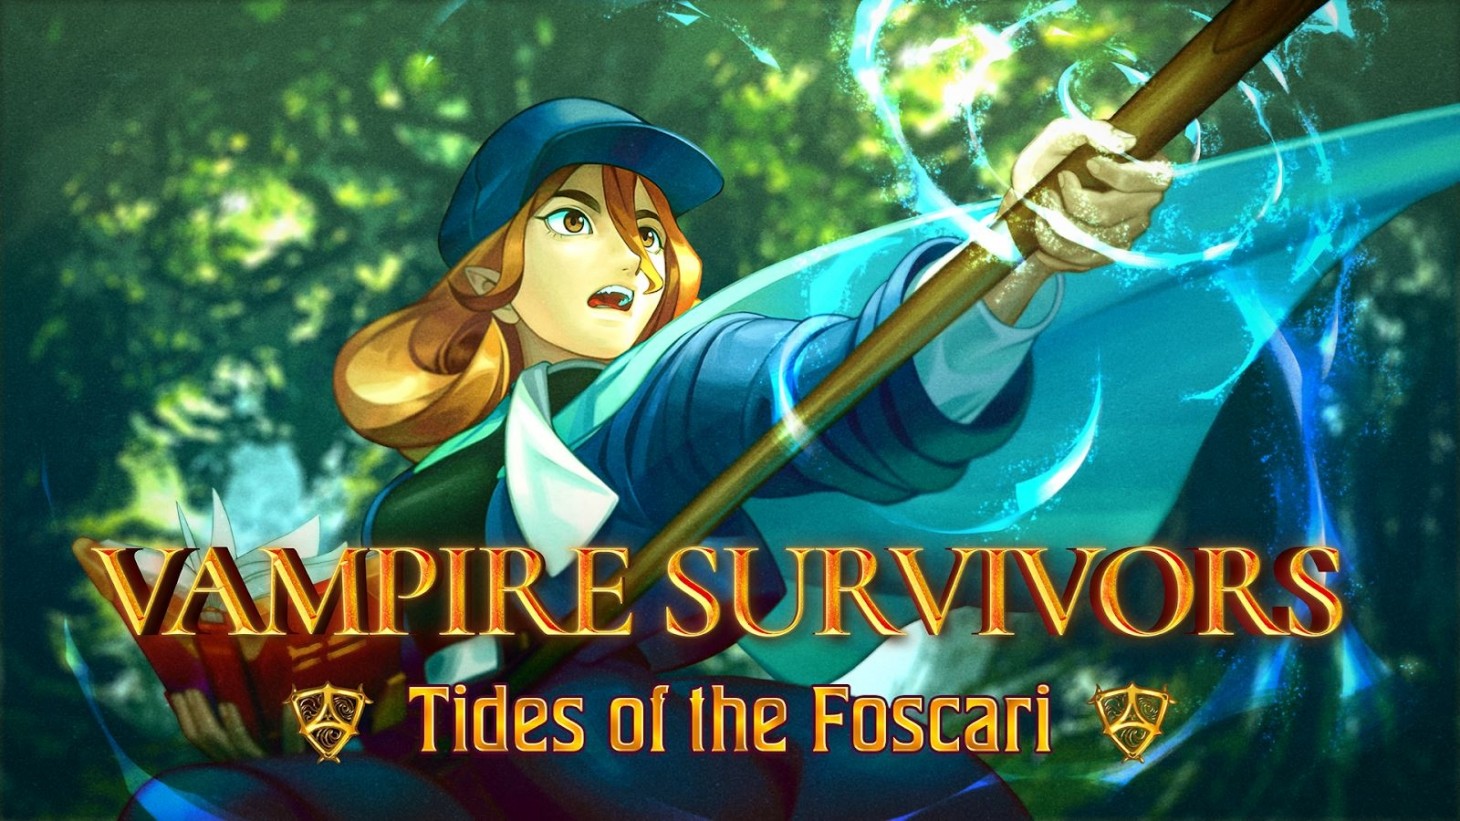 Vampire Survivors recevra un nouveau pack d'extension Tides of the Foscari qui coûtera 2 $.